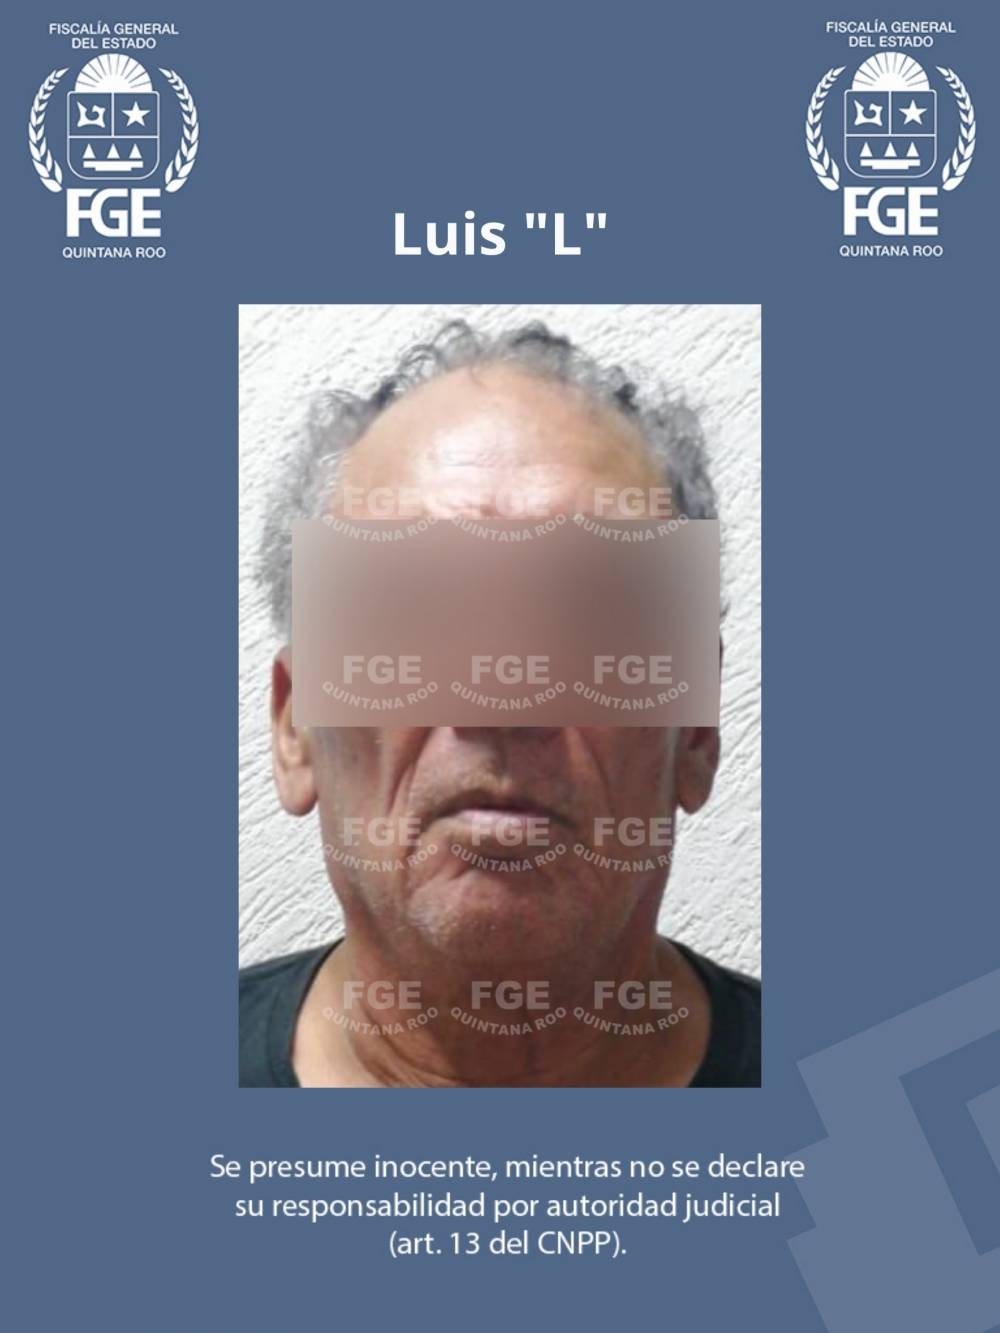 Vinculan a proceso a Luis 'L' por delito de fraude en Playa del Carmen